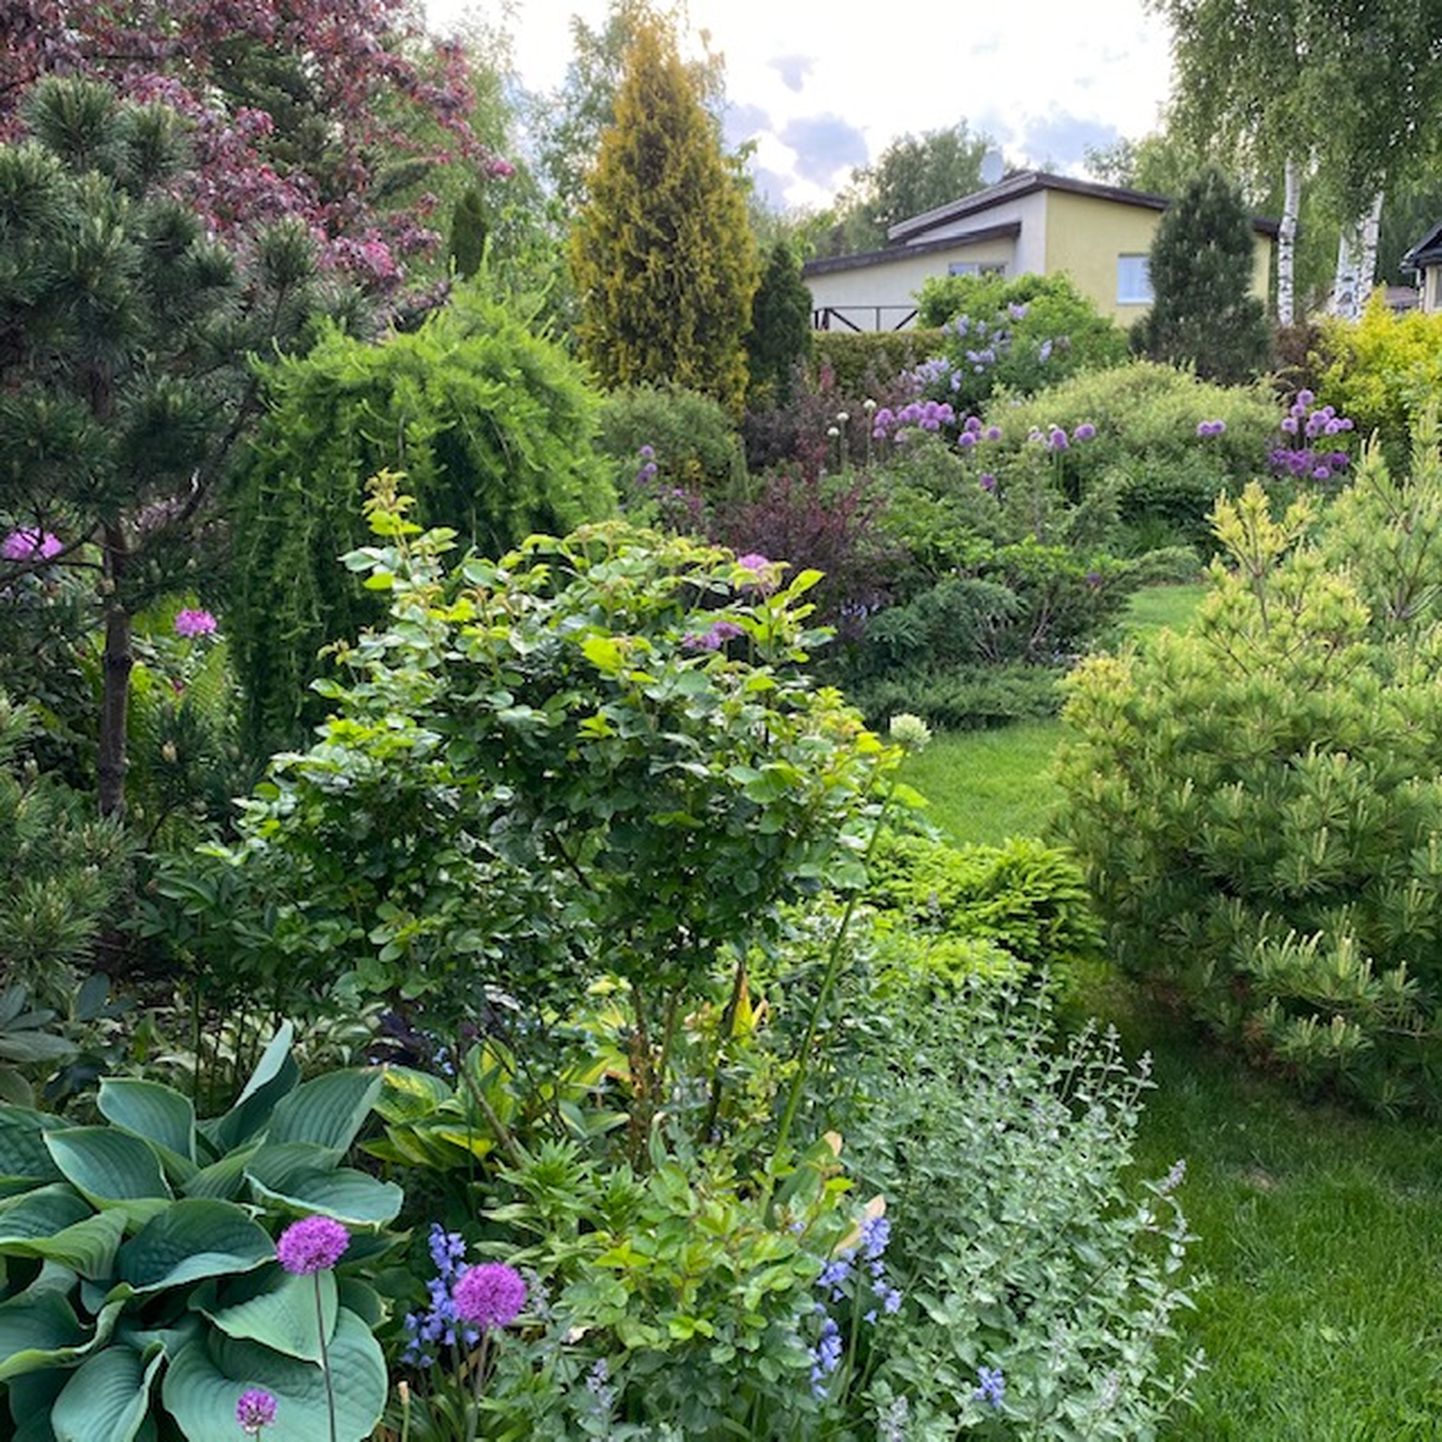 Самый красивый сад Хааберсти 2021 года. Снимок иллюстративный.